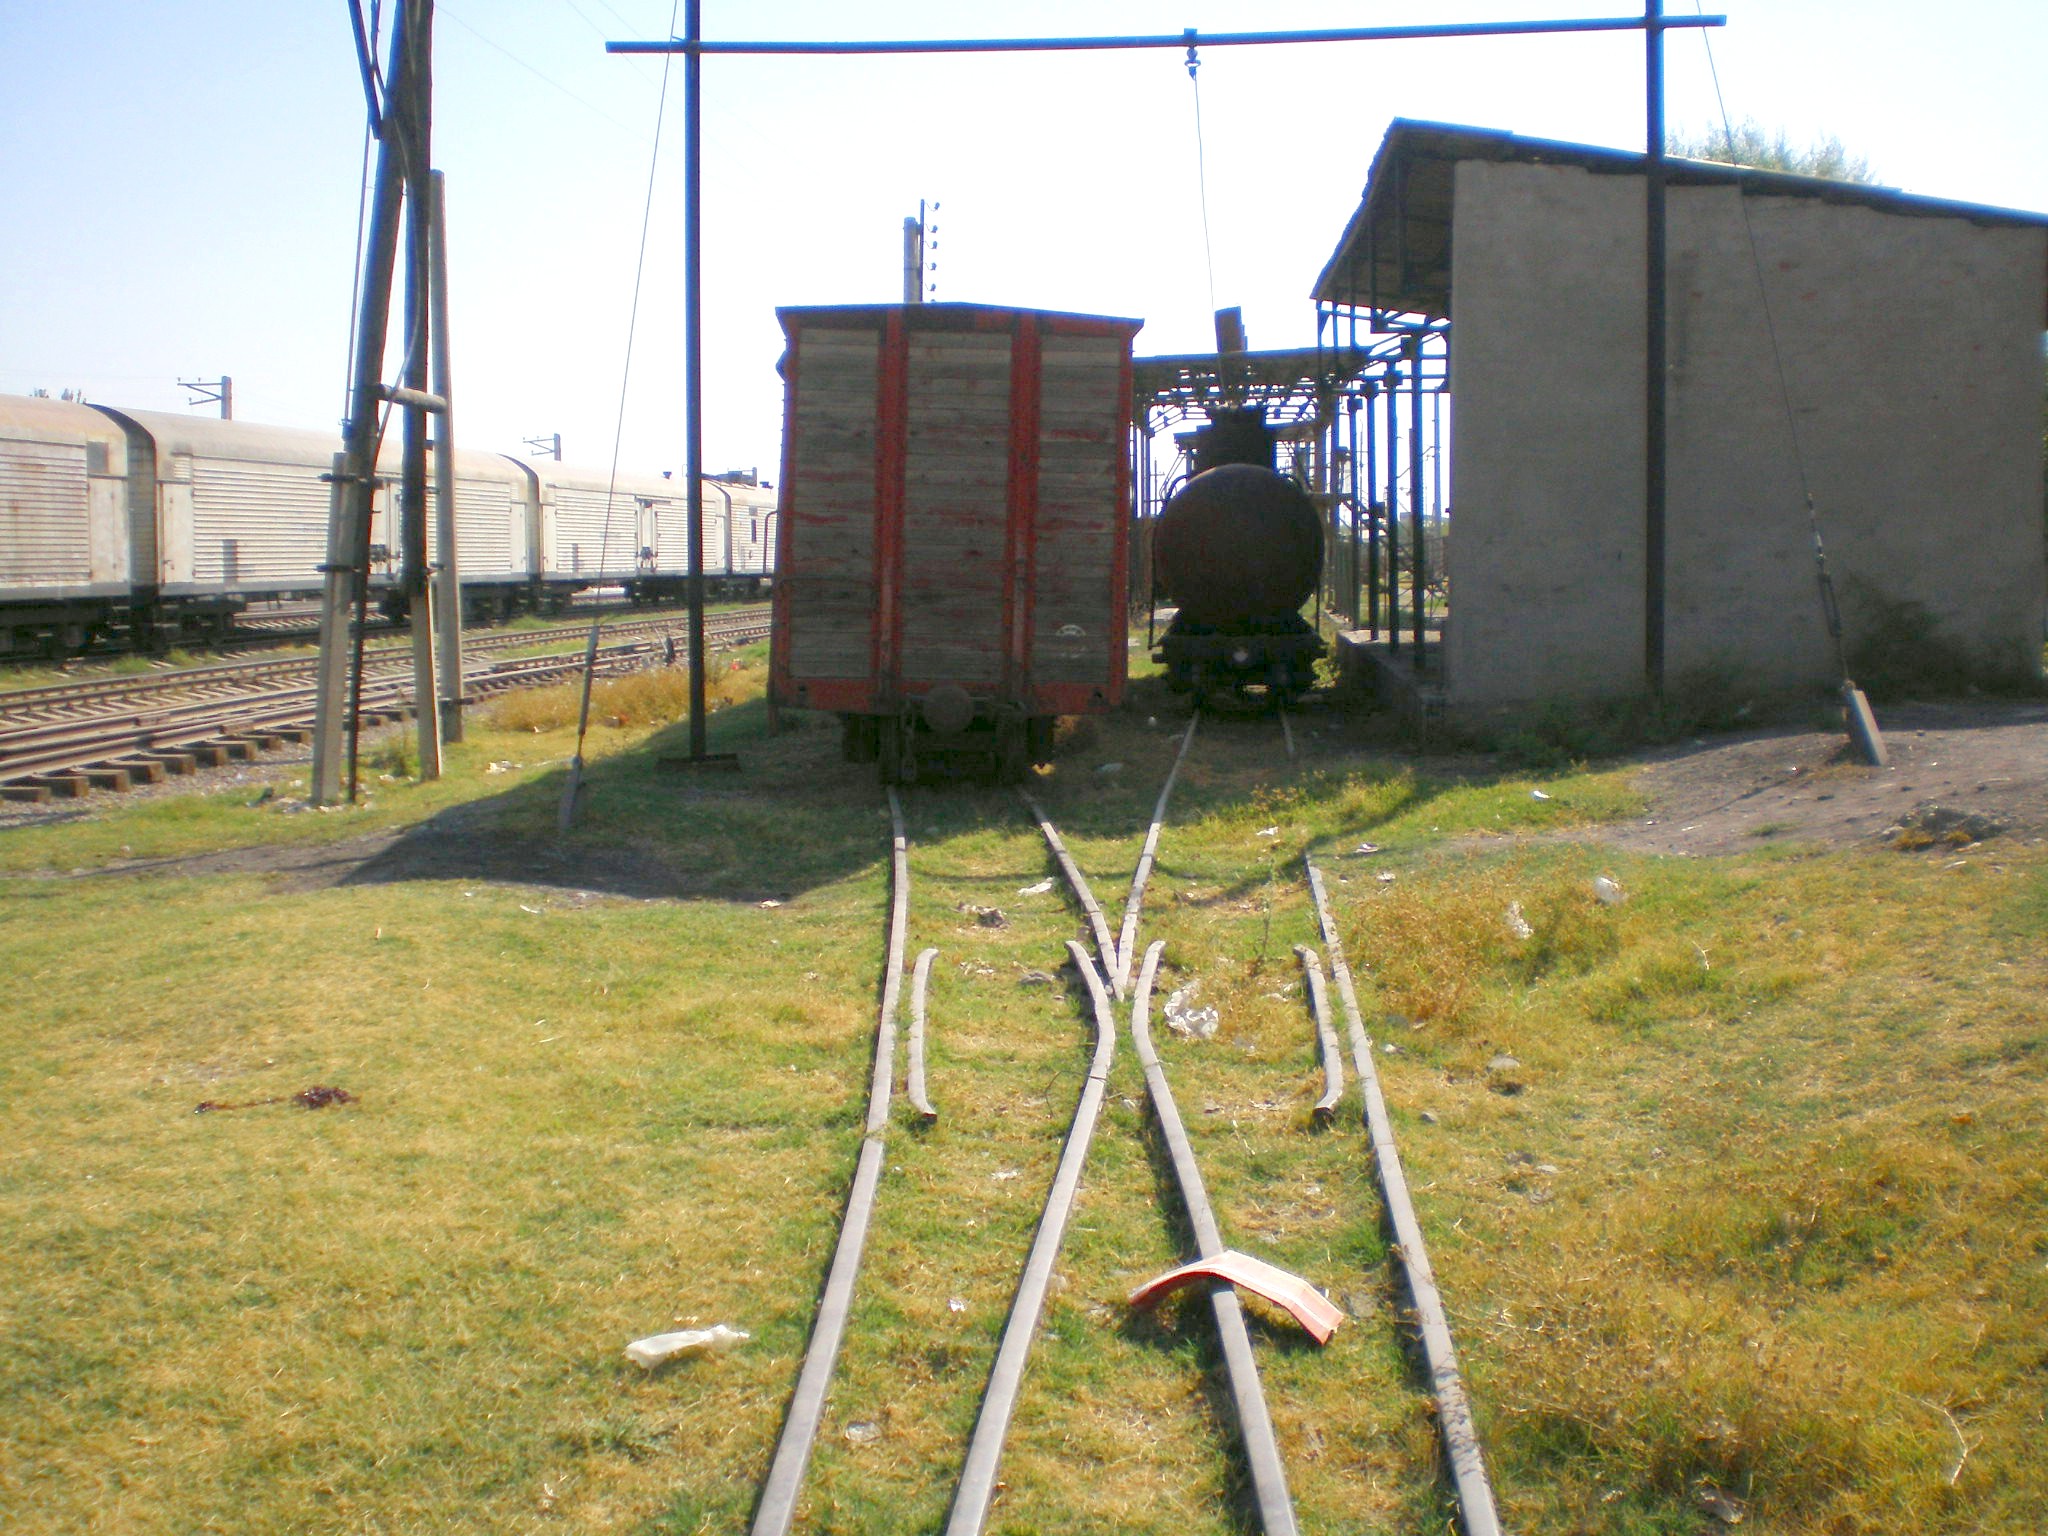 Сулюктинская узкоколейная железная дорога  —  фотографии, сделанные в 2008 году (часть 1)